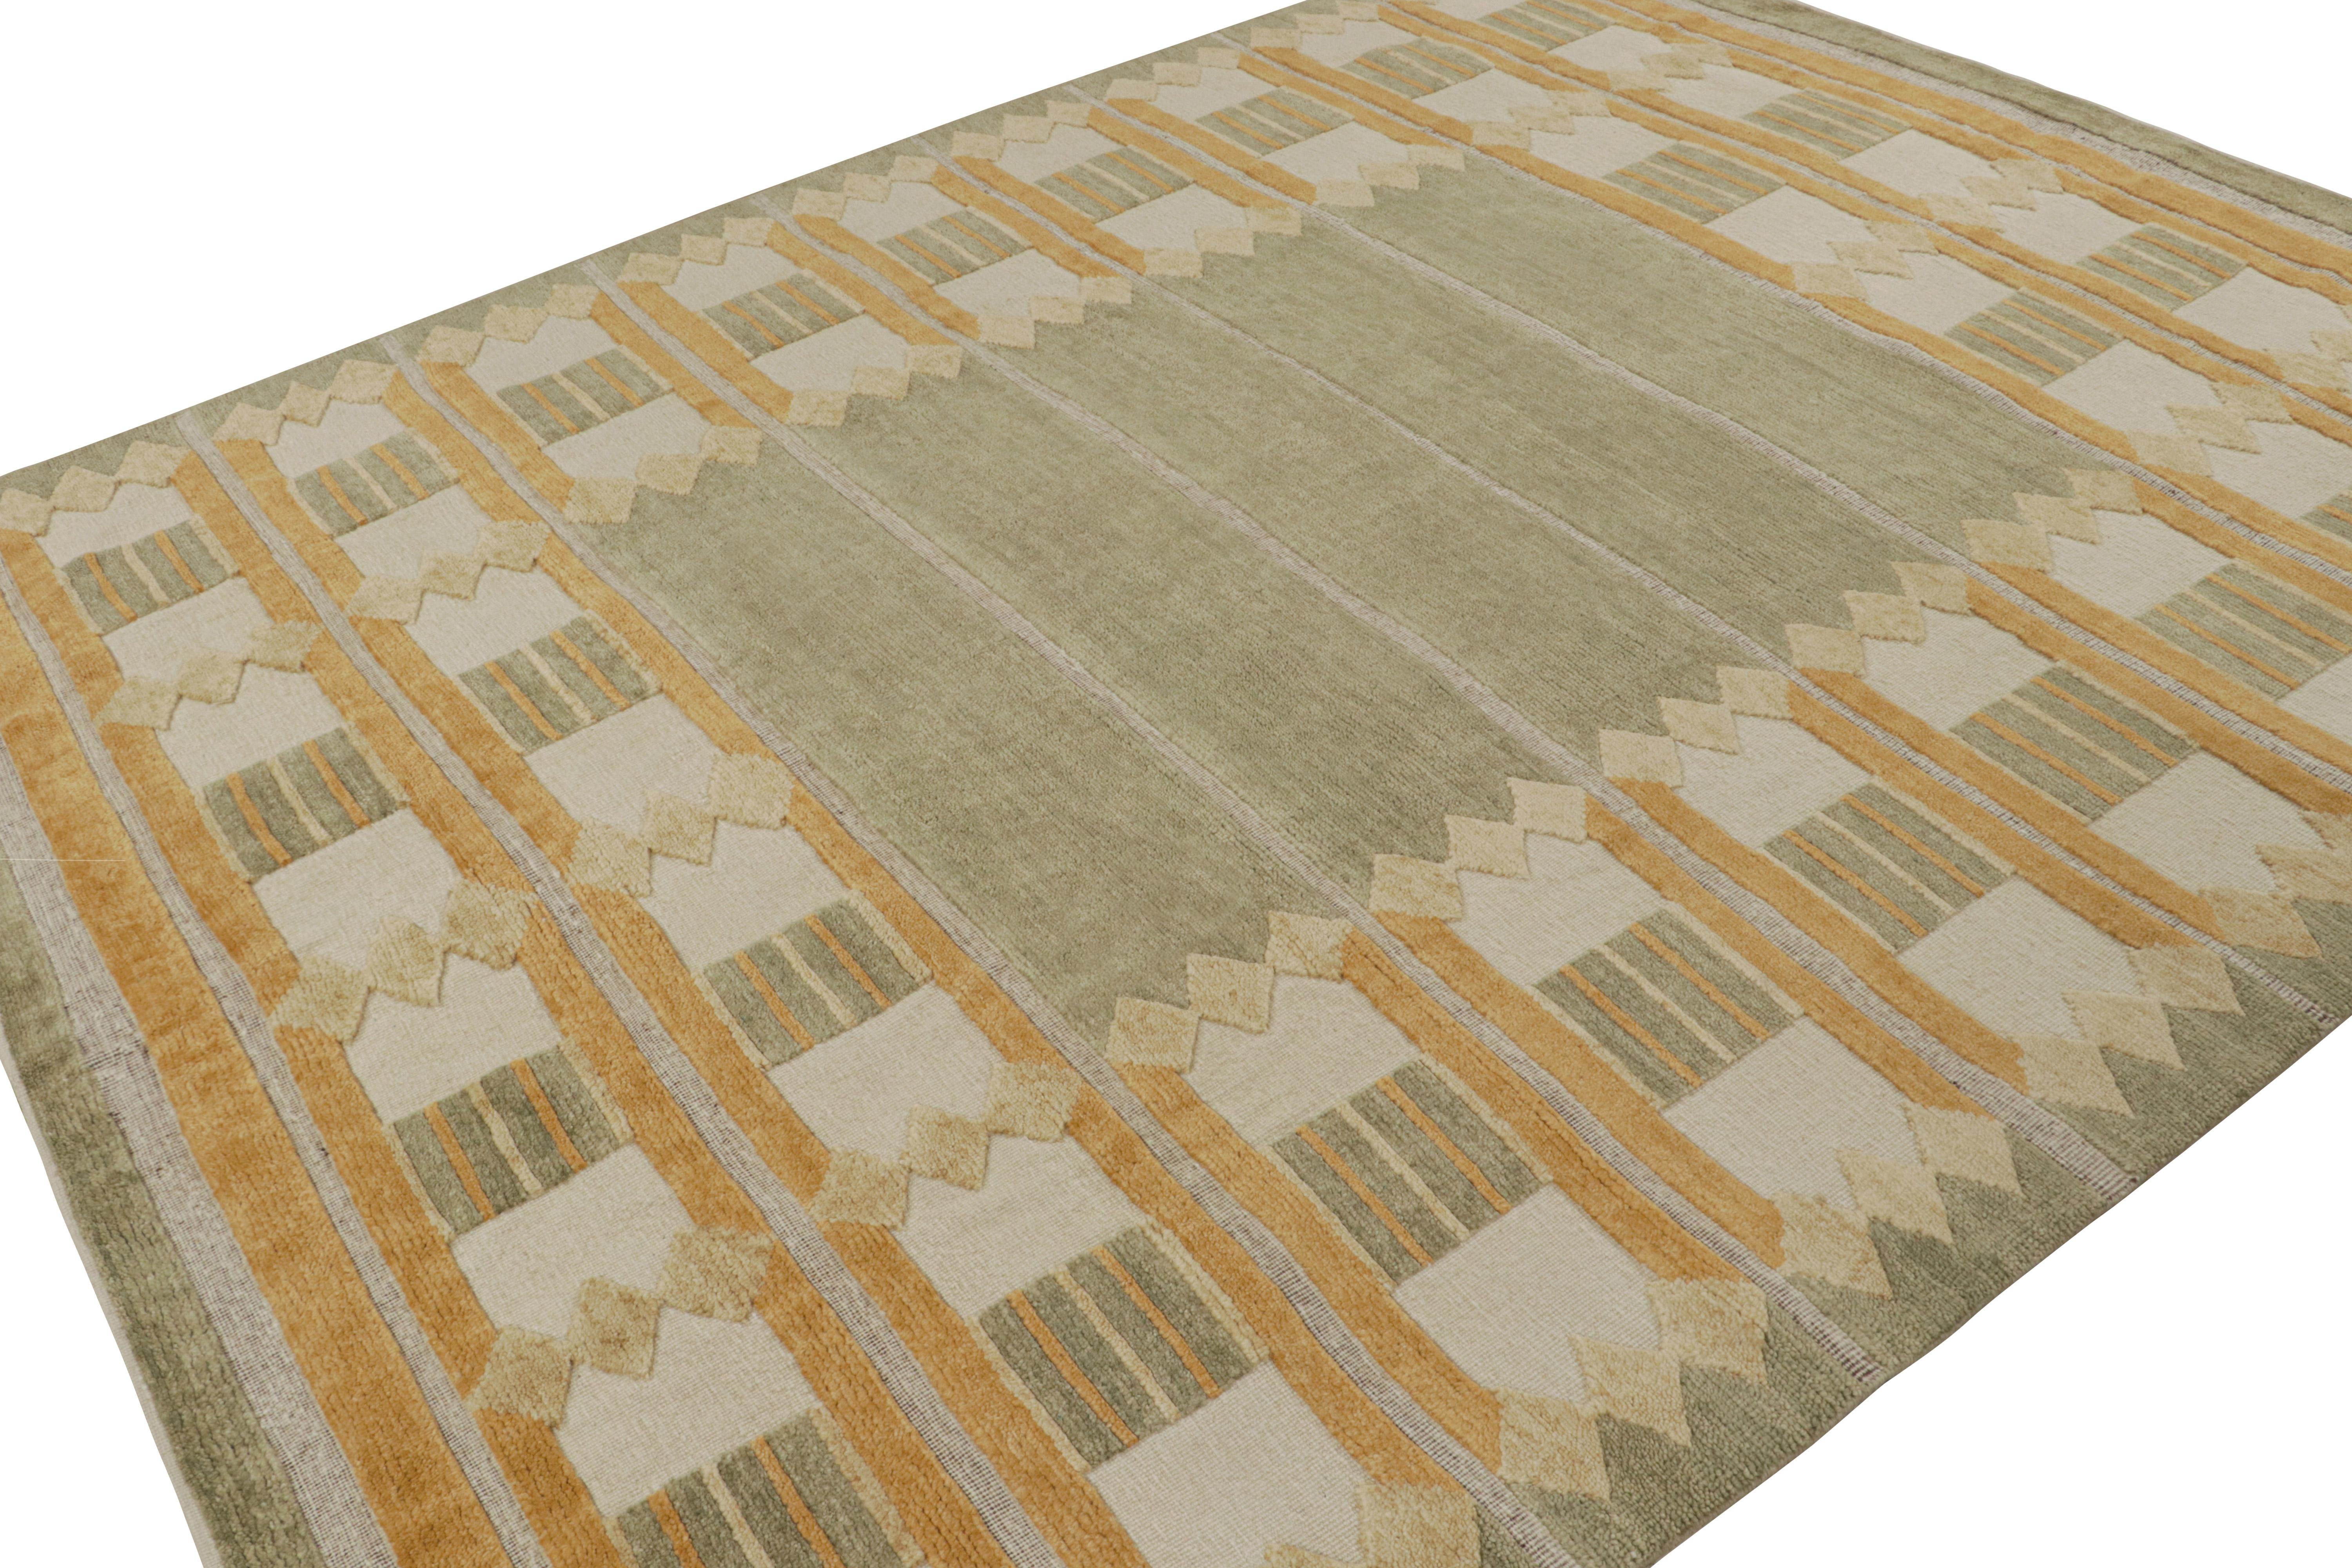 Dieser 8x10 große Teppich ist aus der skandinavischen Teppichkollektion von Rug & Kilim. Das Design des handgeknüpften Teppichs aus Wolle und ungefärbten Naturgarnen ist eine moderne Interpretation der Rollakan- und Rya-Teppiche im Stil des